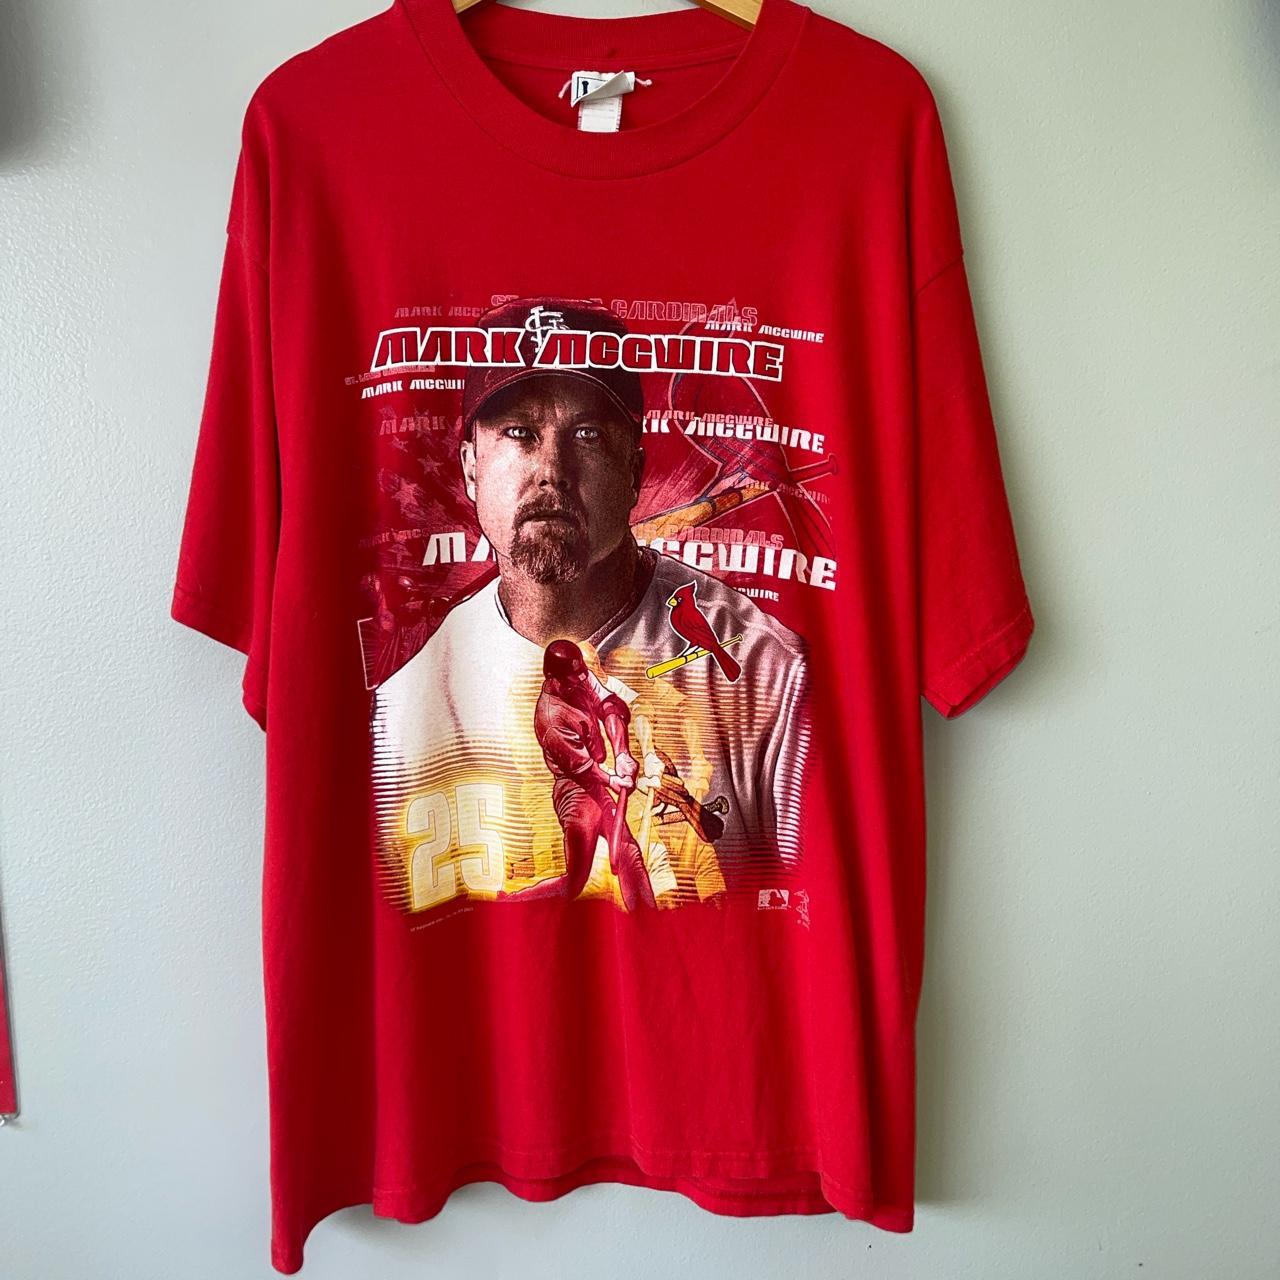 St Louis Cardinals T-Shirts for Sale